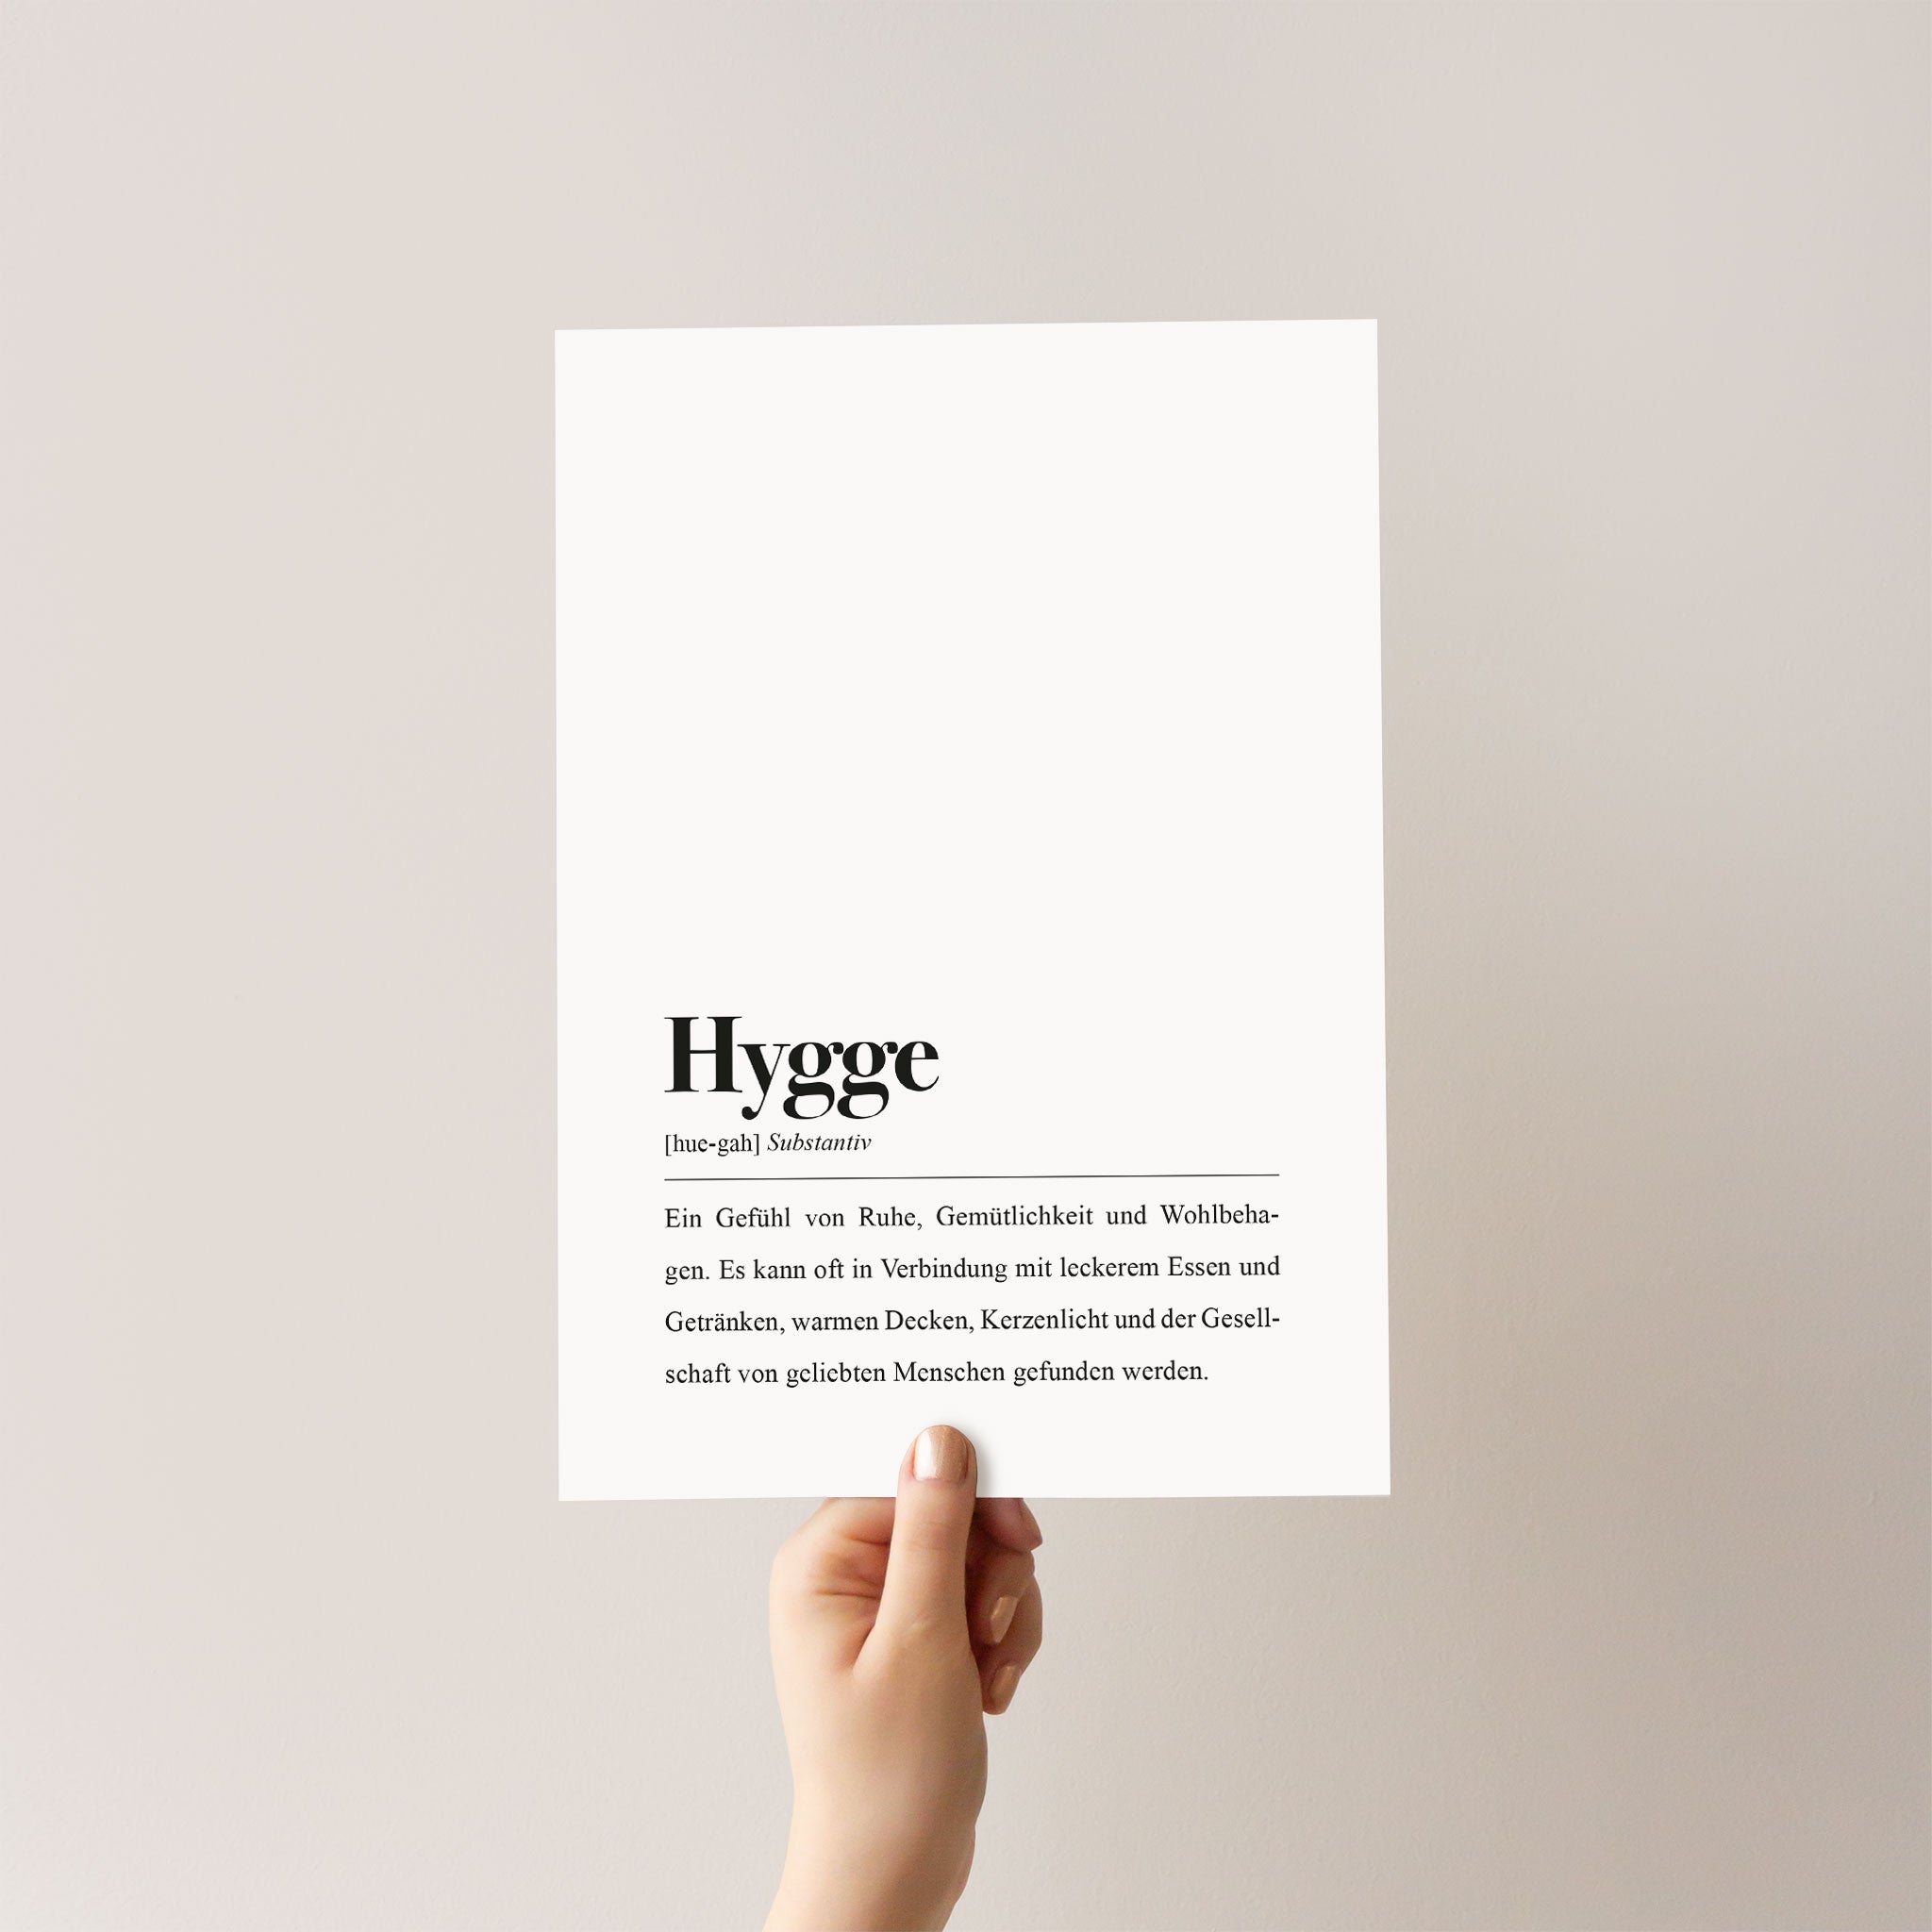 Kunstdruck mit Wortbedeutung des Wortes "Hygge" auf Deutsch in schwarz-weiß